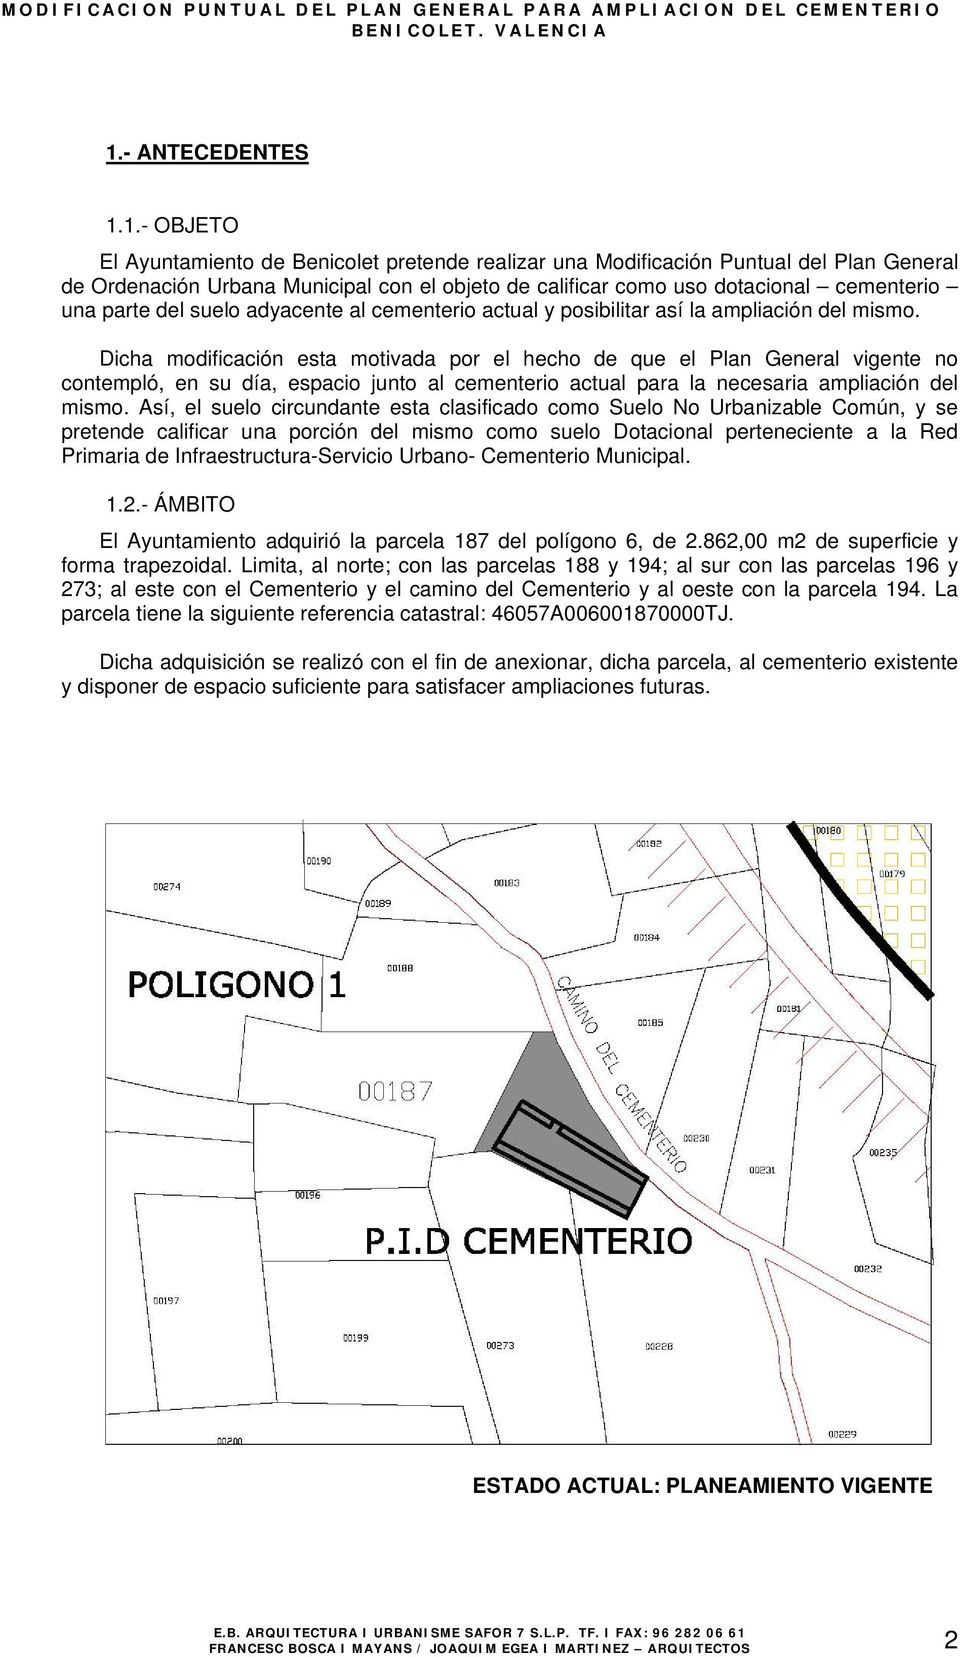 1.- OBJETO El Ayuntamiento de Benicolet pretende realizar una Modificación Puntual del Plan General de Ordenación Urbana Municipal con el objeto de calificar como uso dotacional cementerio una parte